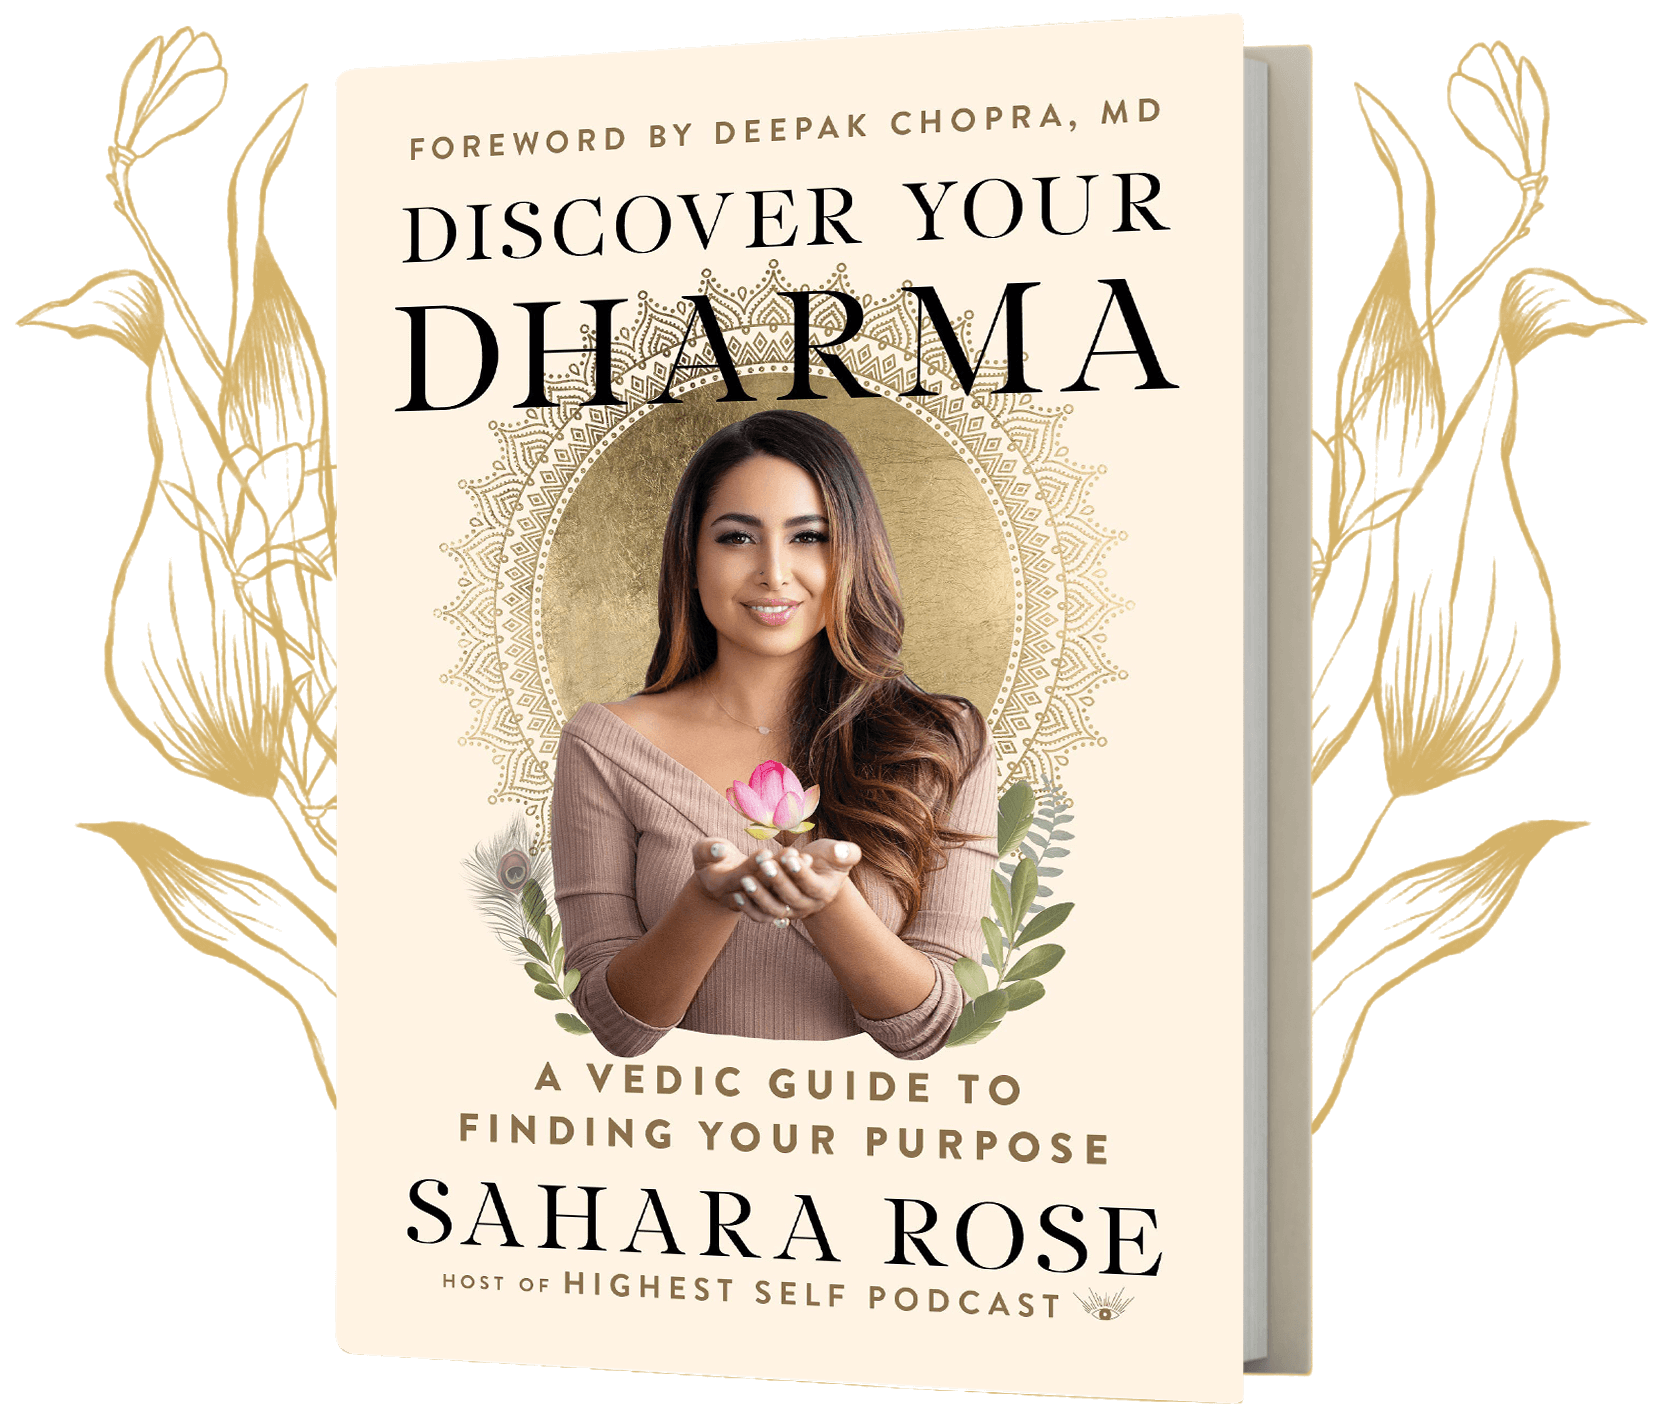 Sahara rose book cover